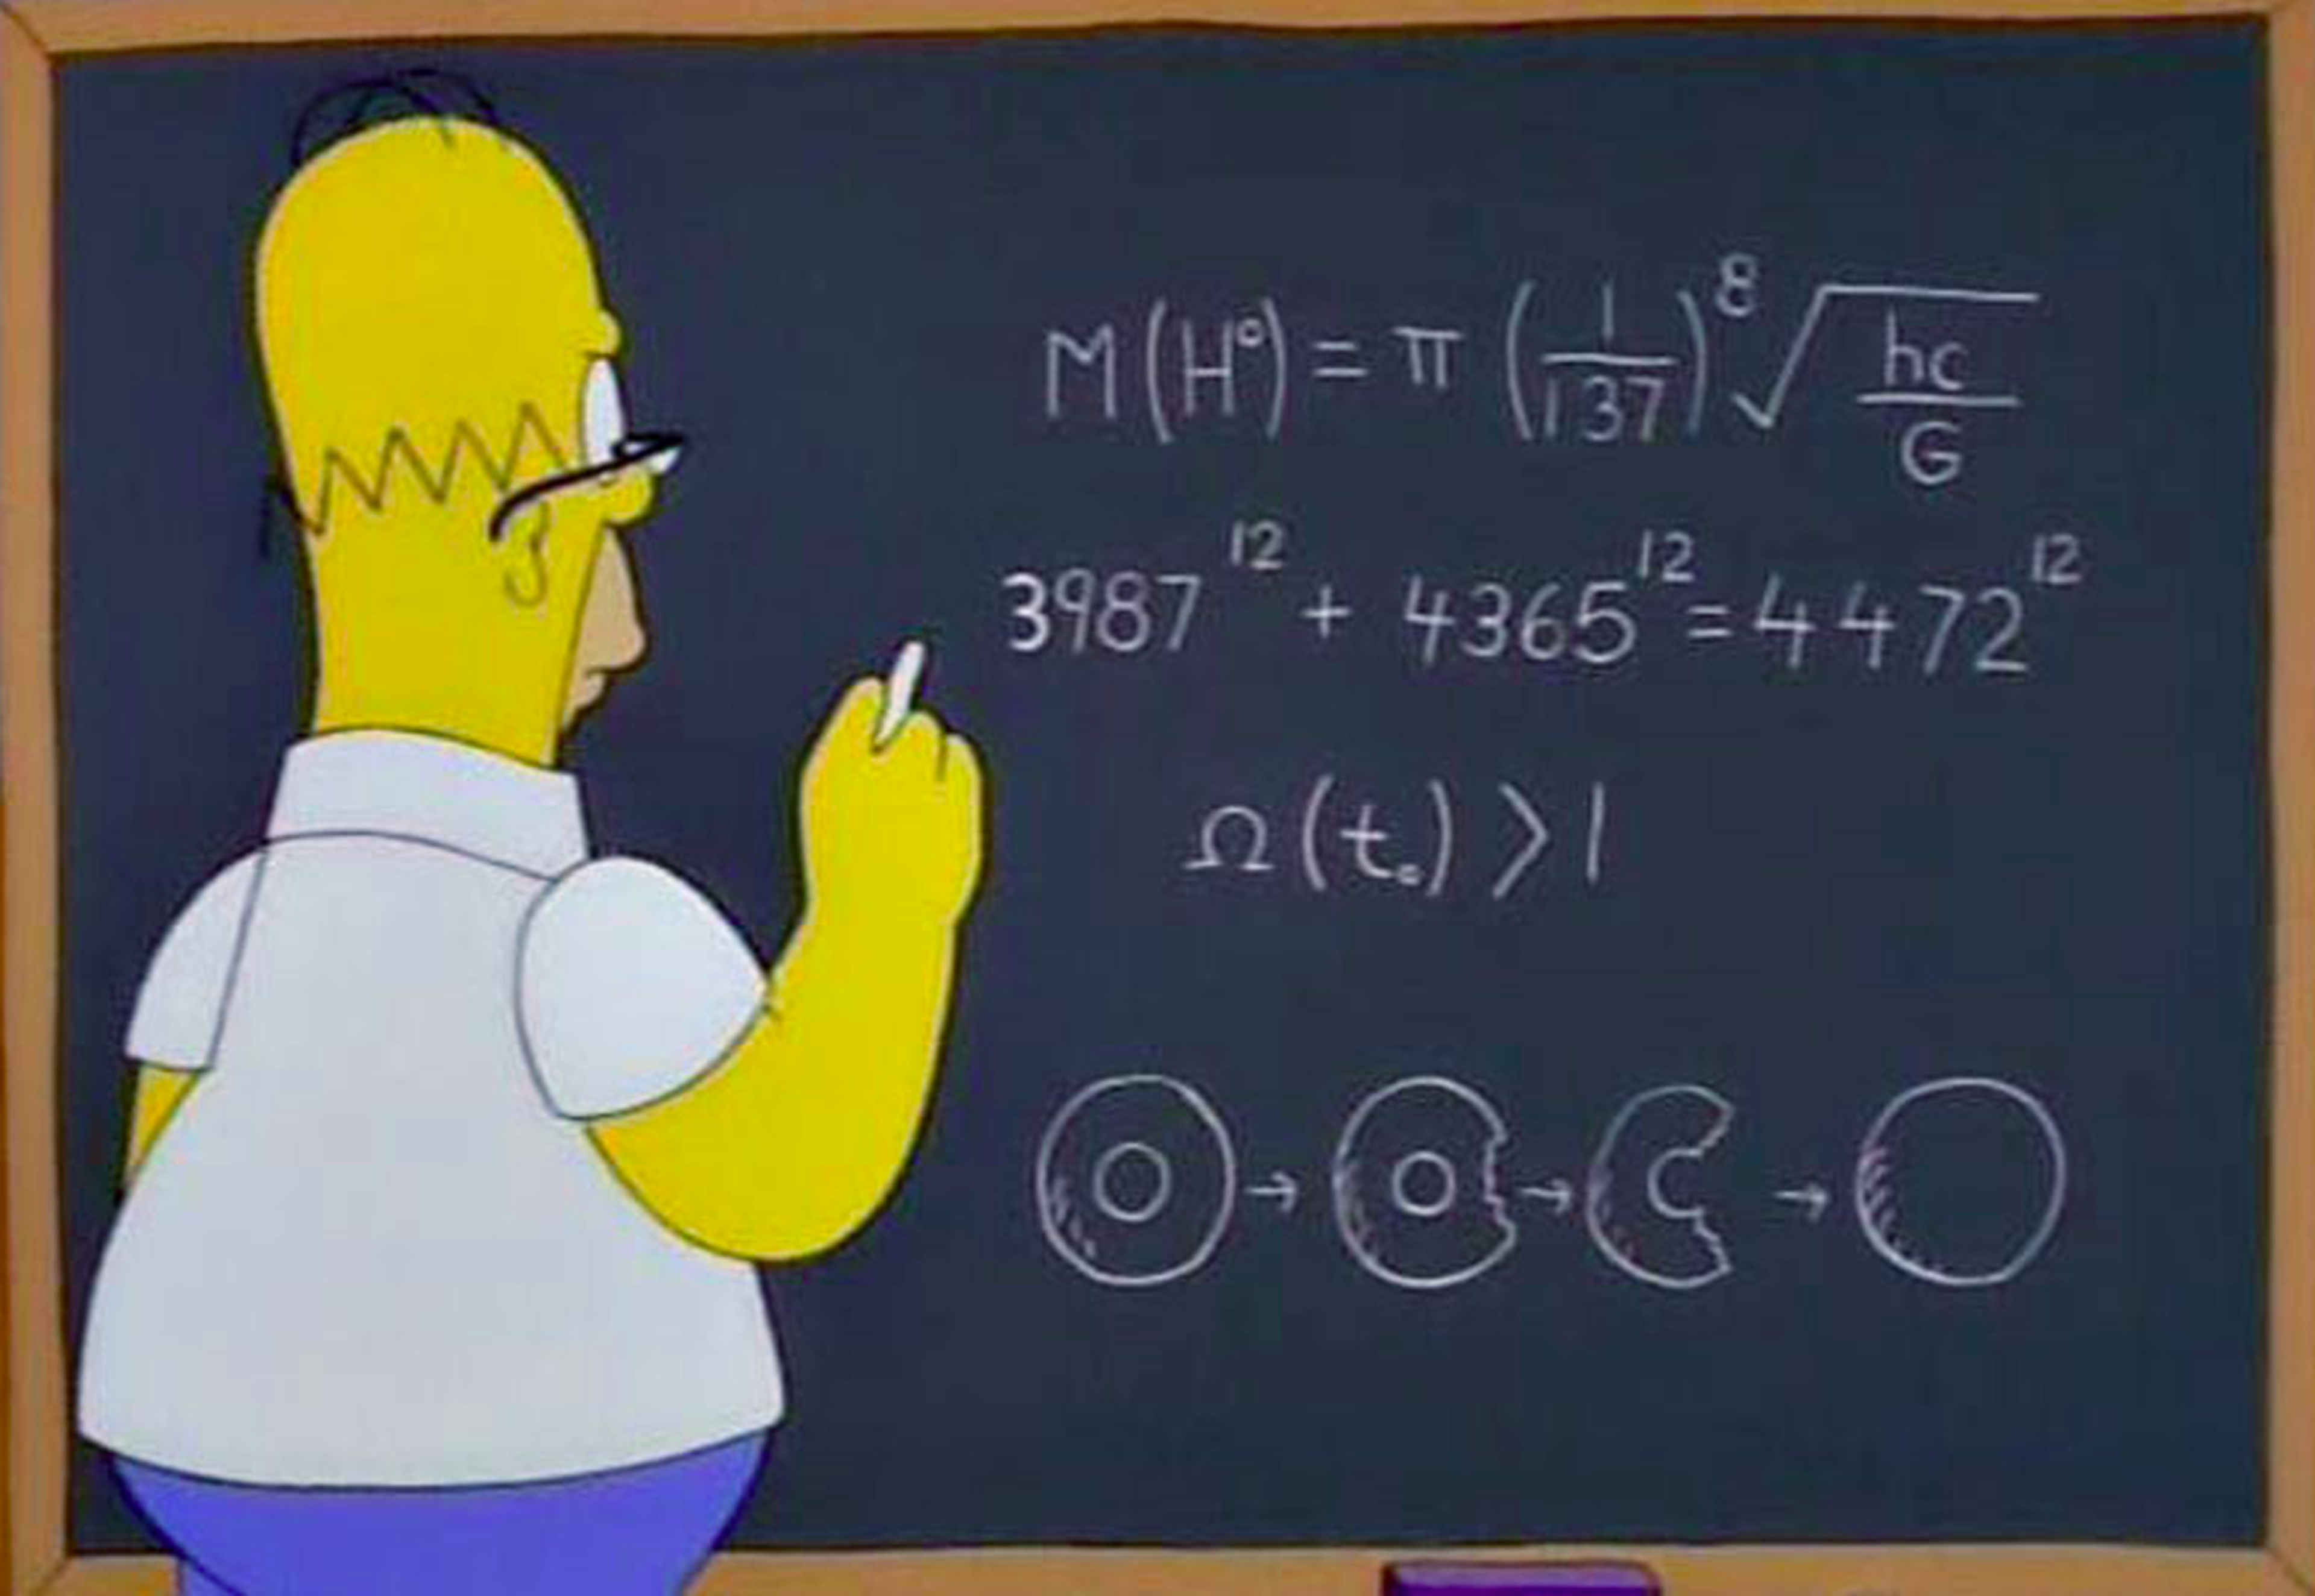 Los Simpsons bosón de higgs